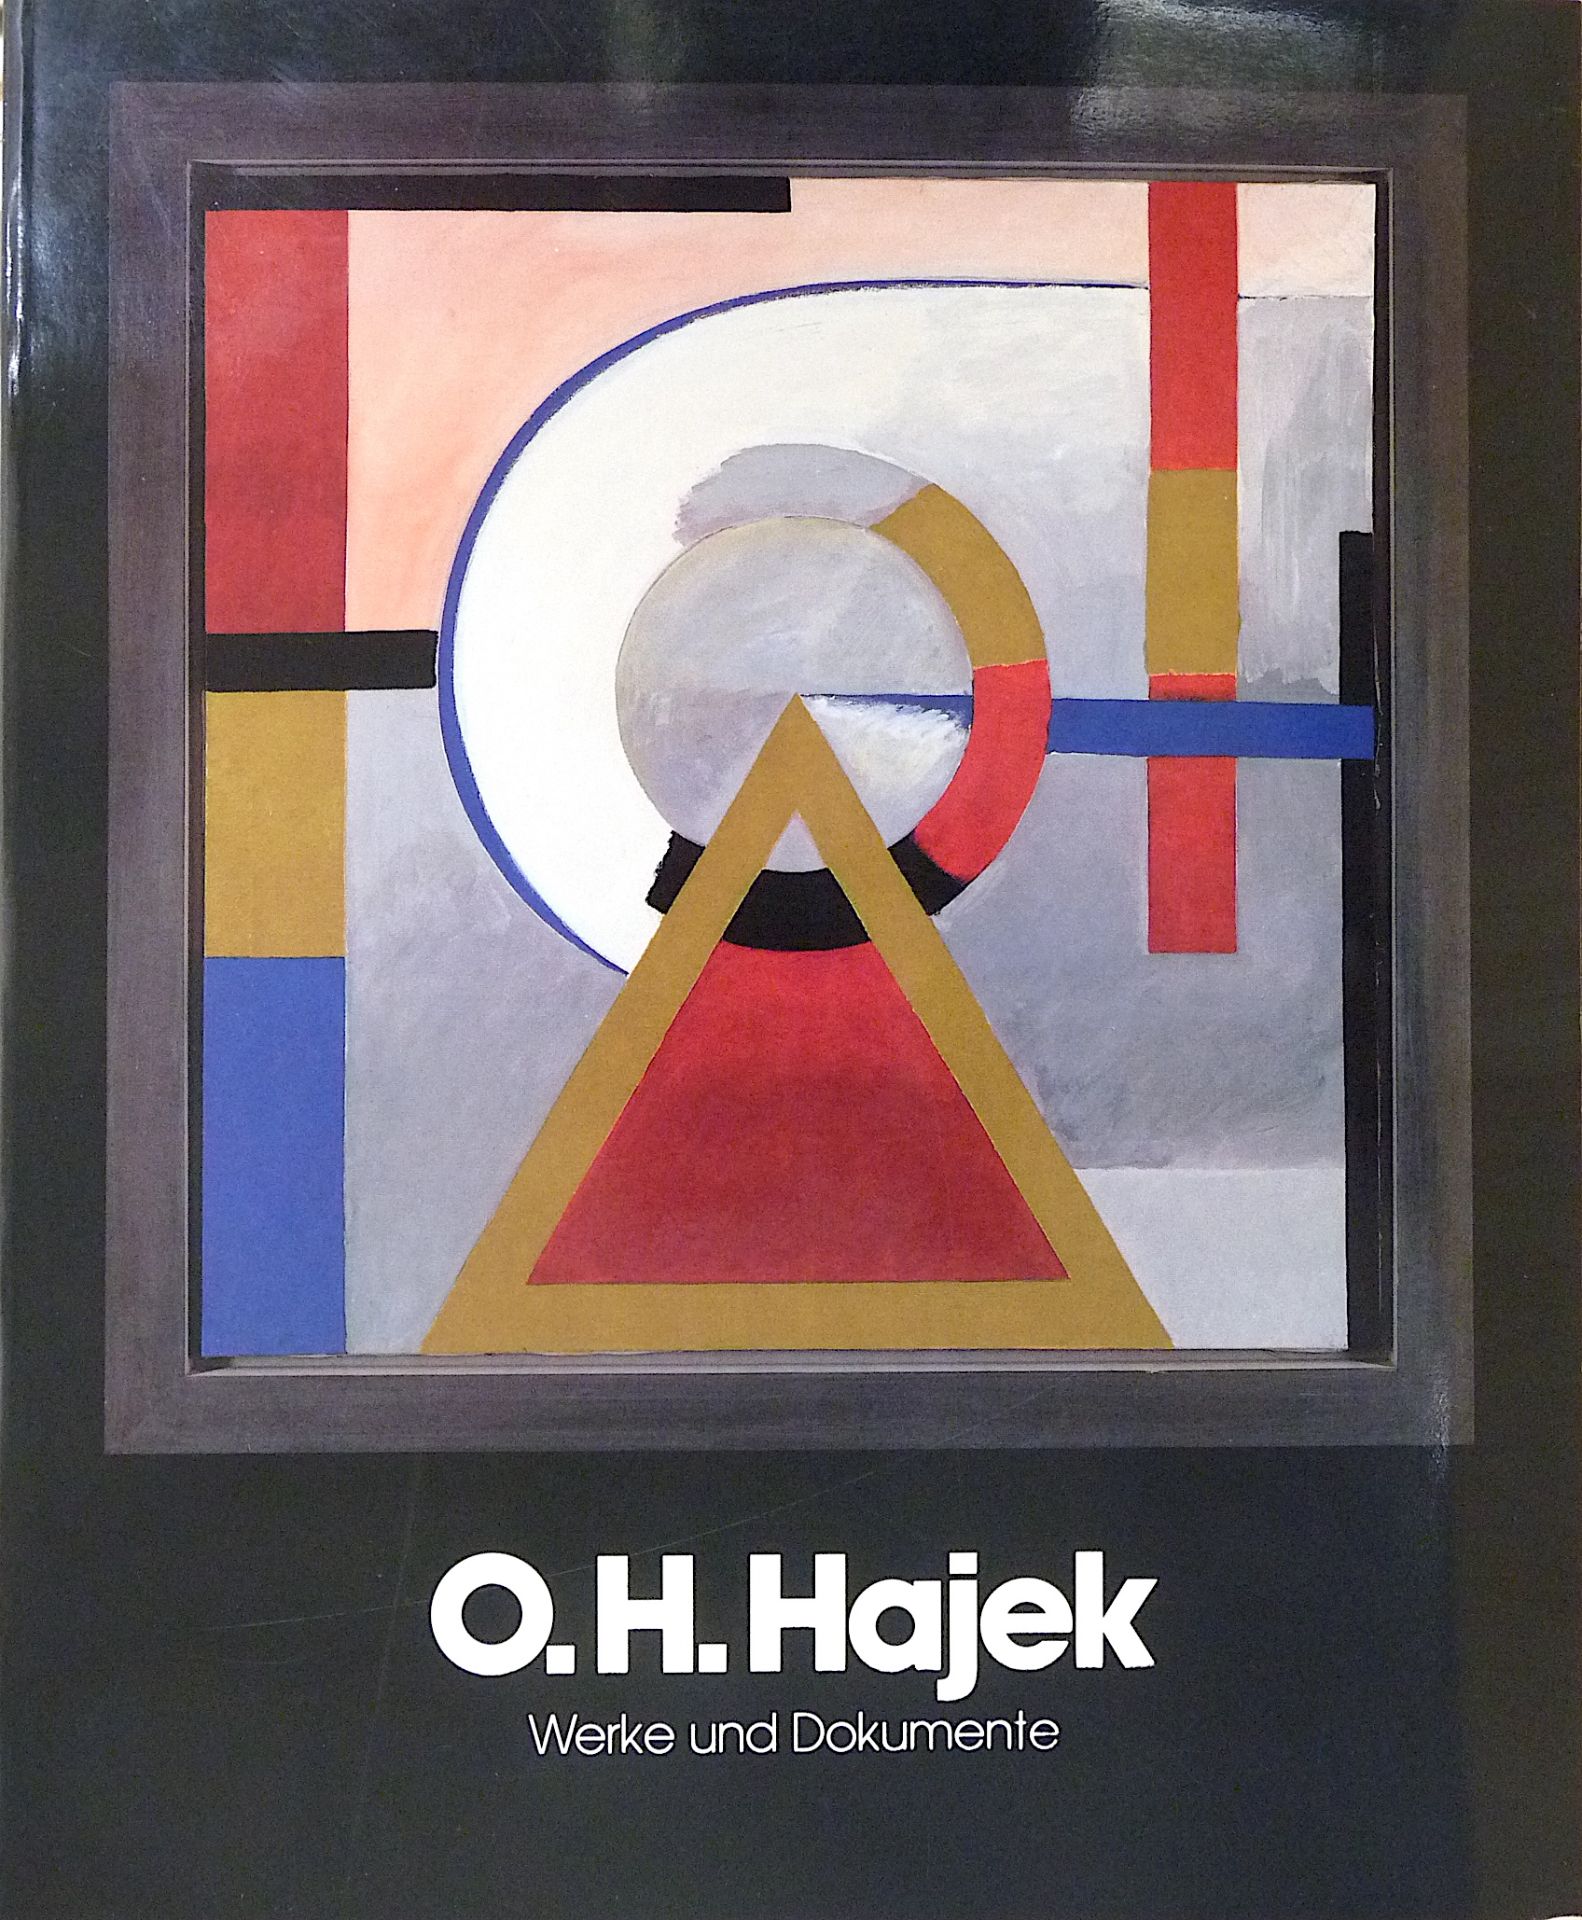 HAJEK, OTTO HERBERT: "Werke und Dokumente", 1987